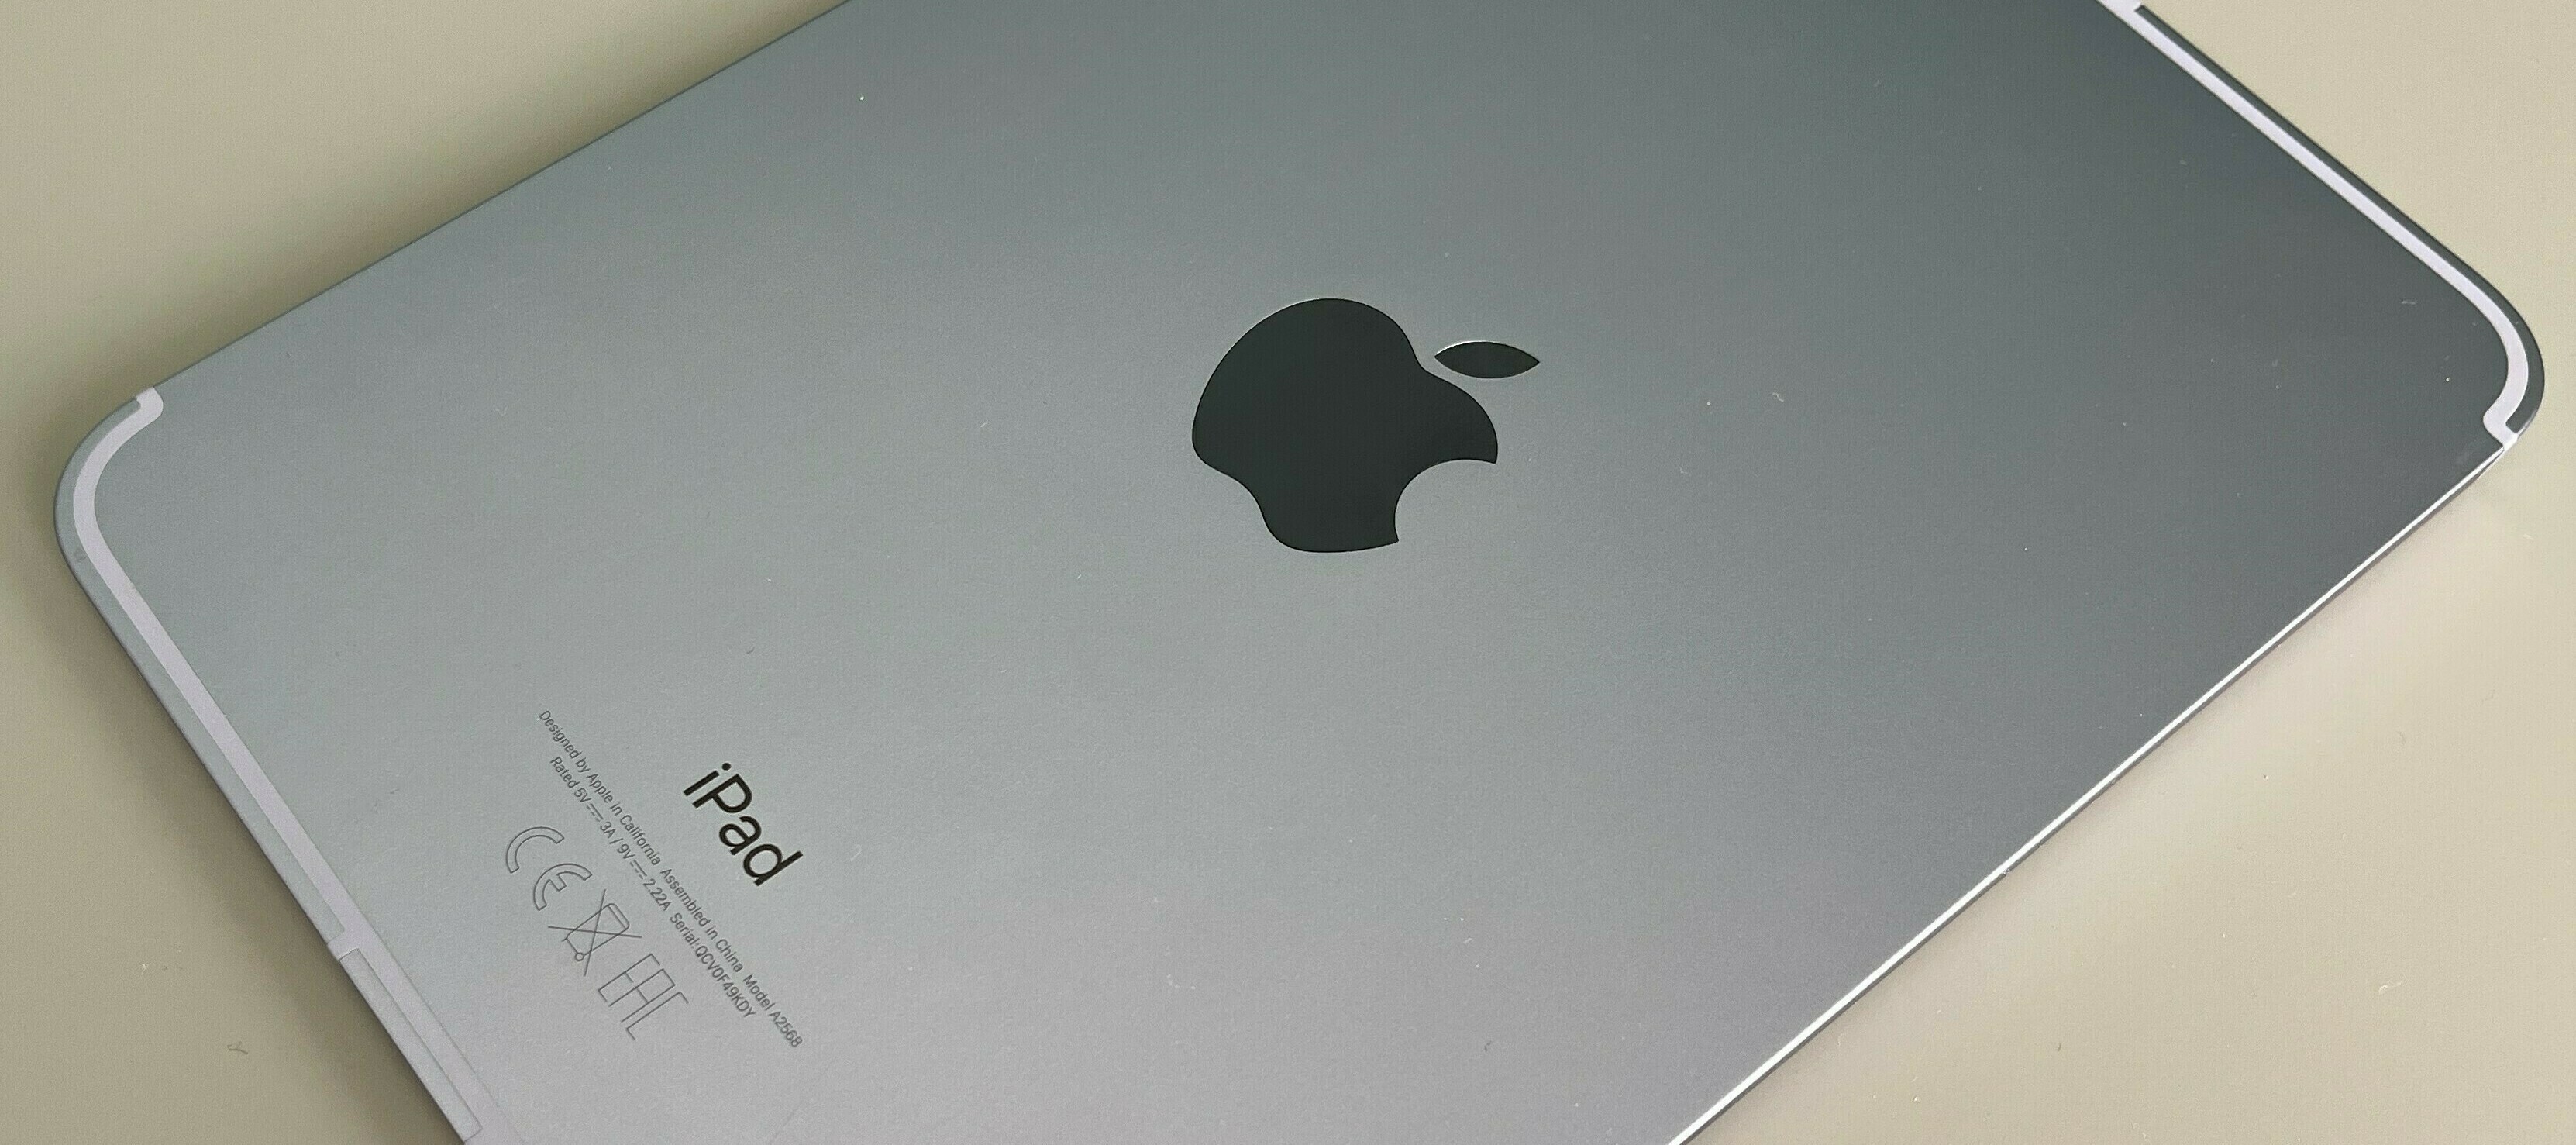 Apple iPad mini - Handlich, praktisch, flott und teuer